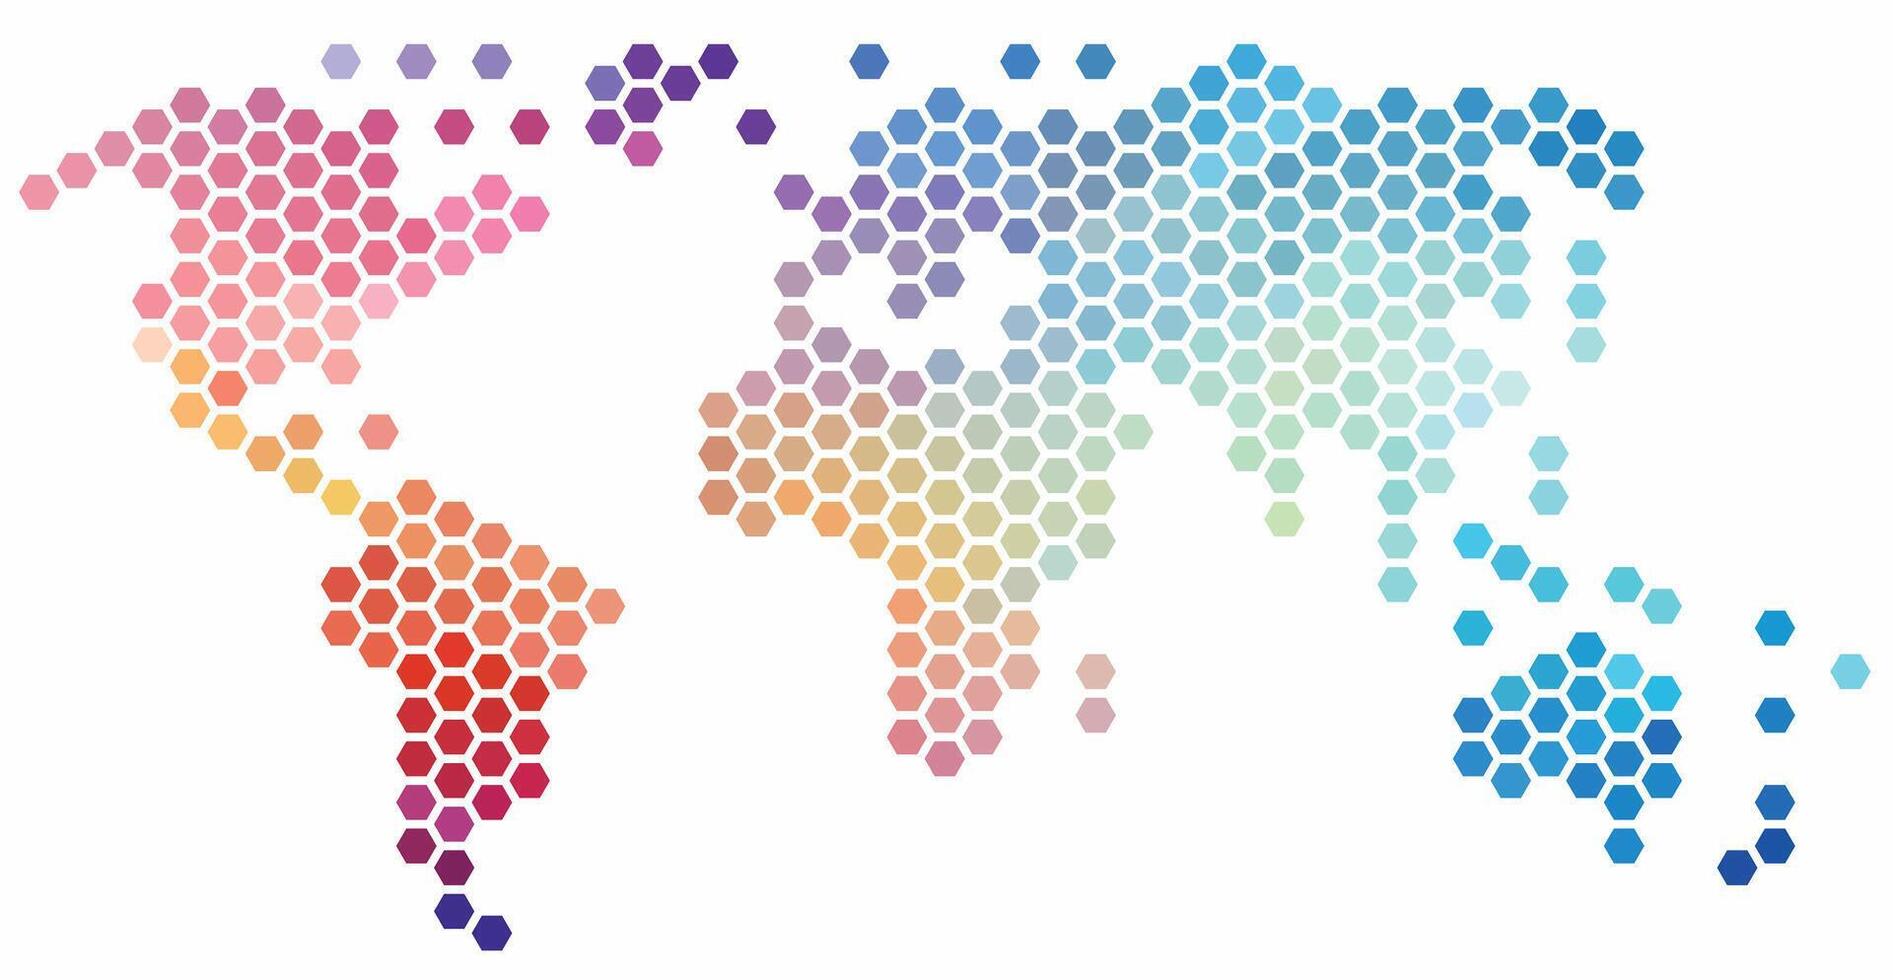 Hexagon gestalten Welt Karte auf Weiß Hintergrund. vektor